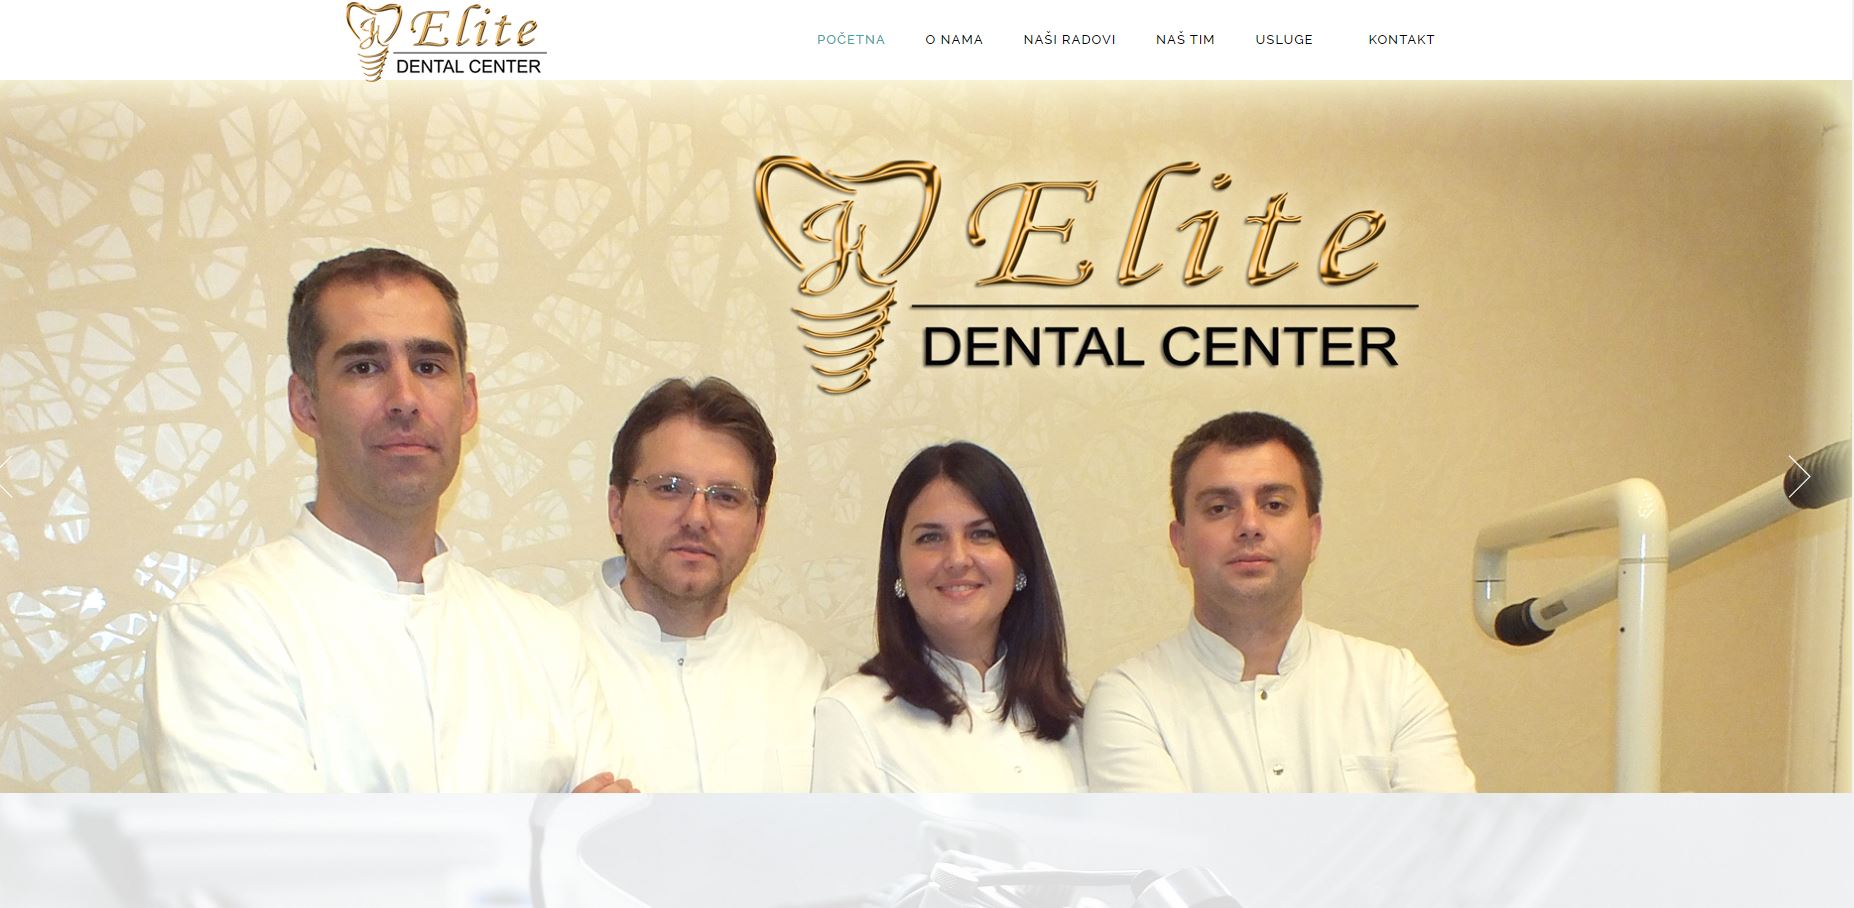 Elite Dental Center